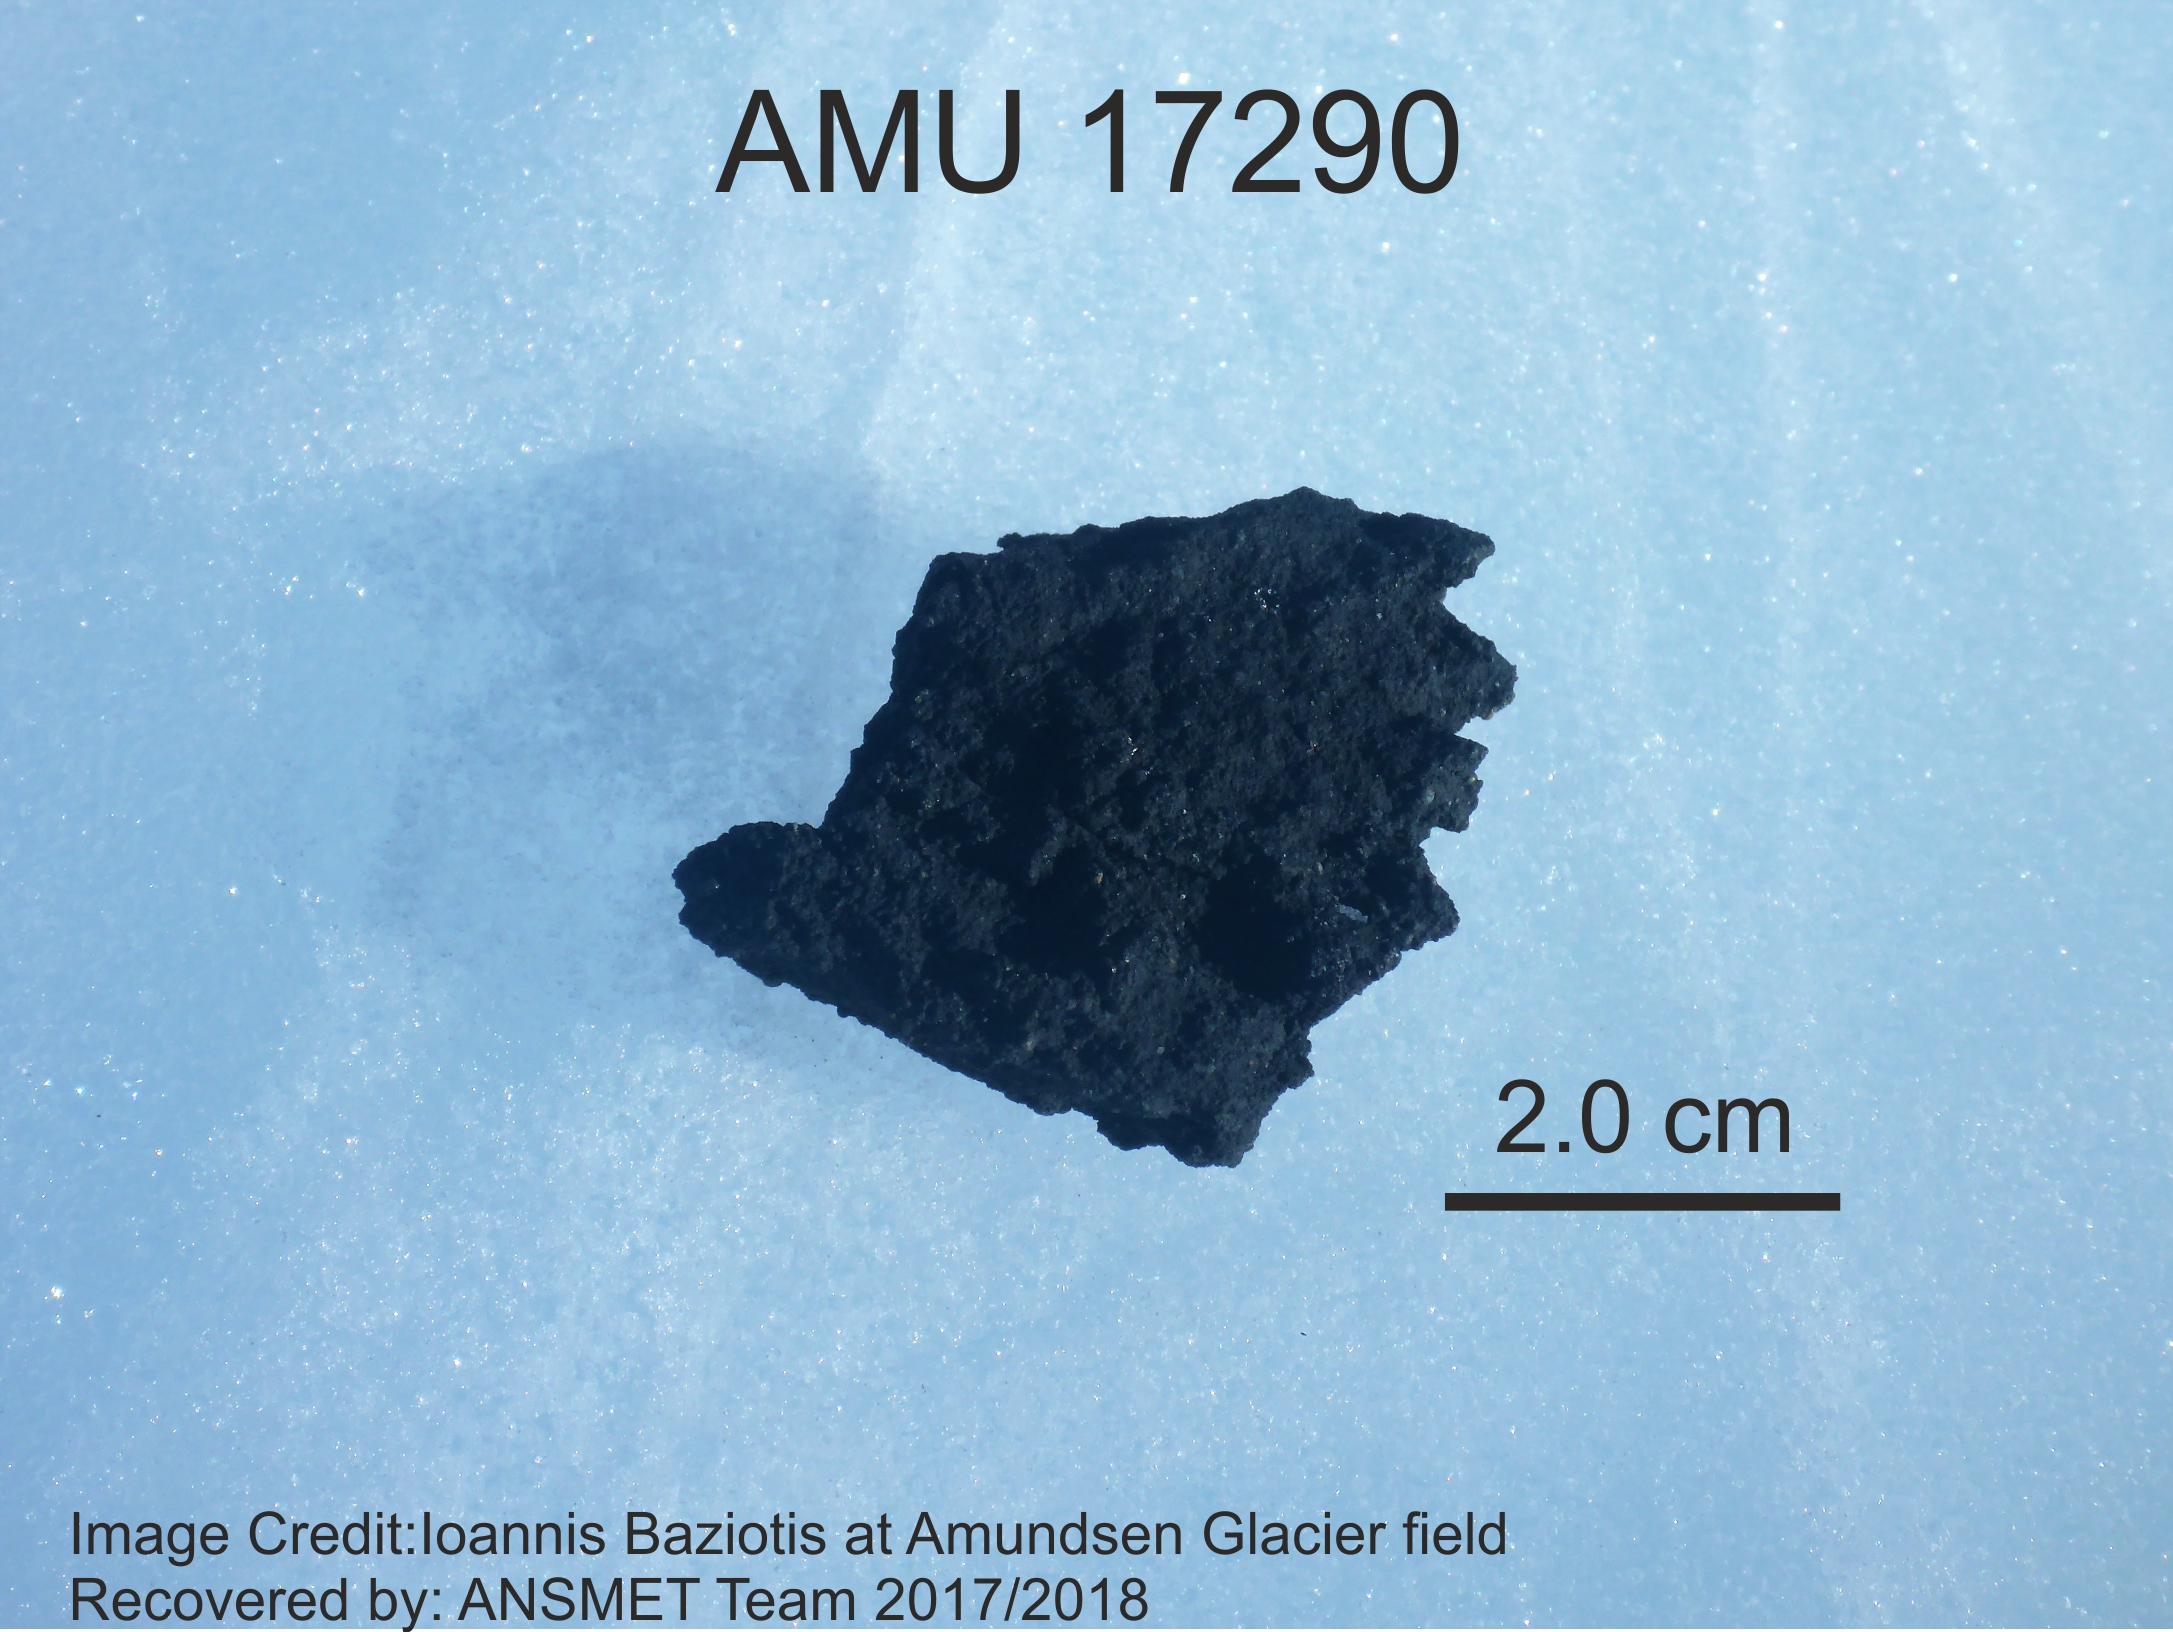 Τα μυστικά του μετεωρίτη AMU 17290 αποκαλύπτουν Έλληνες επιστήμονες